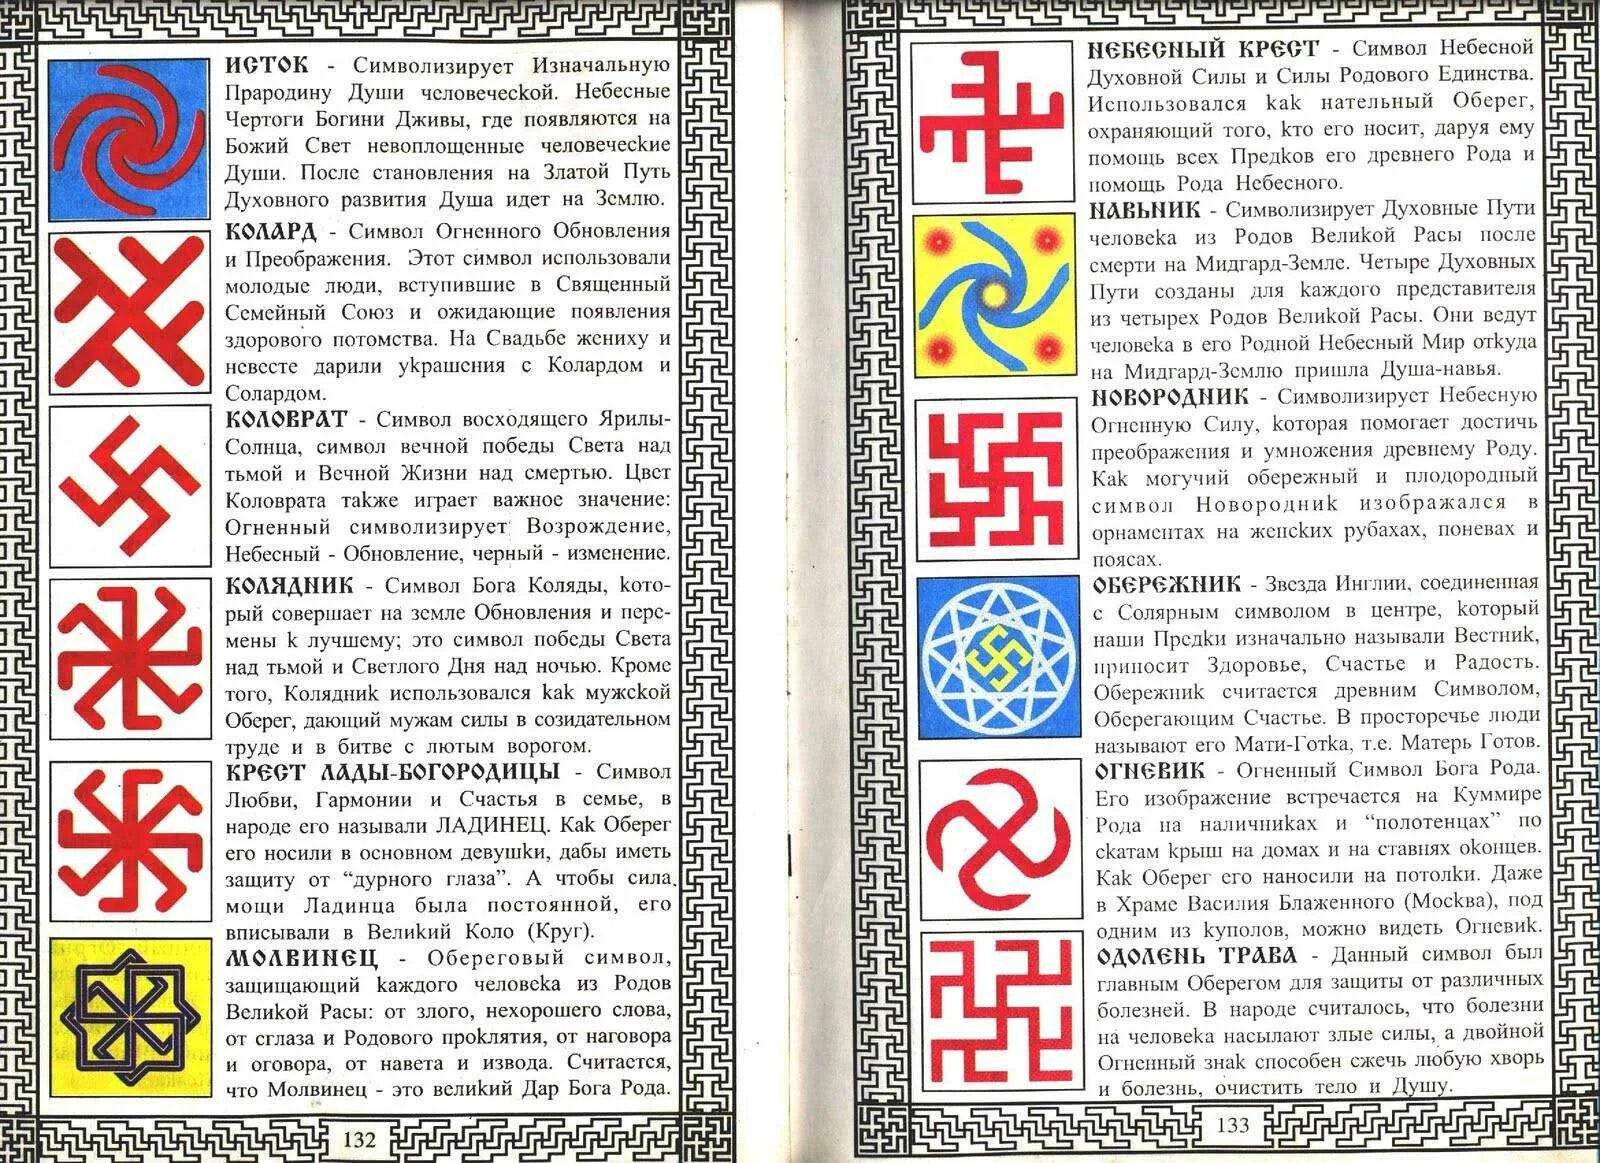 Древние русские символы